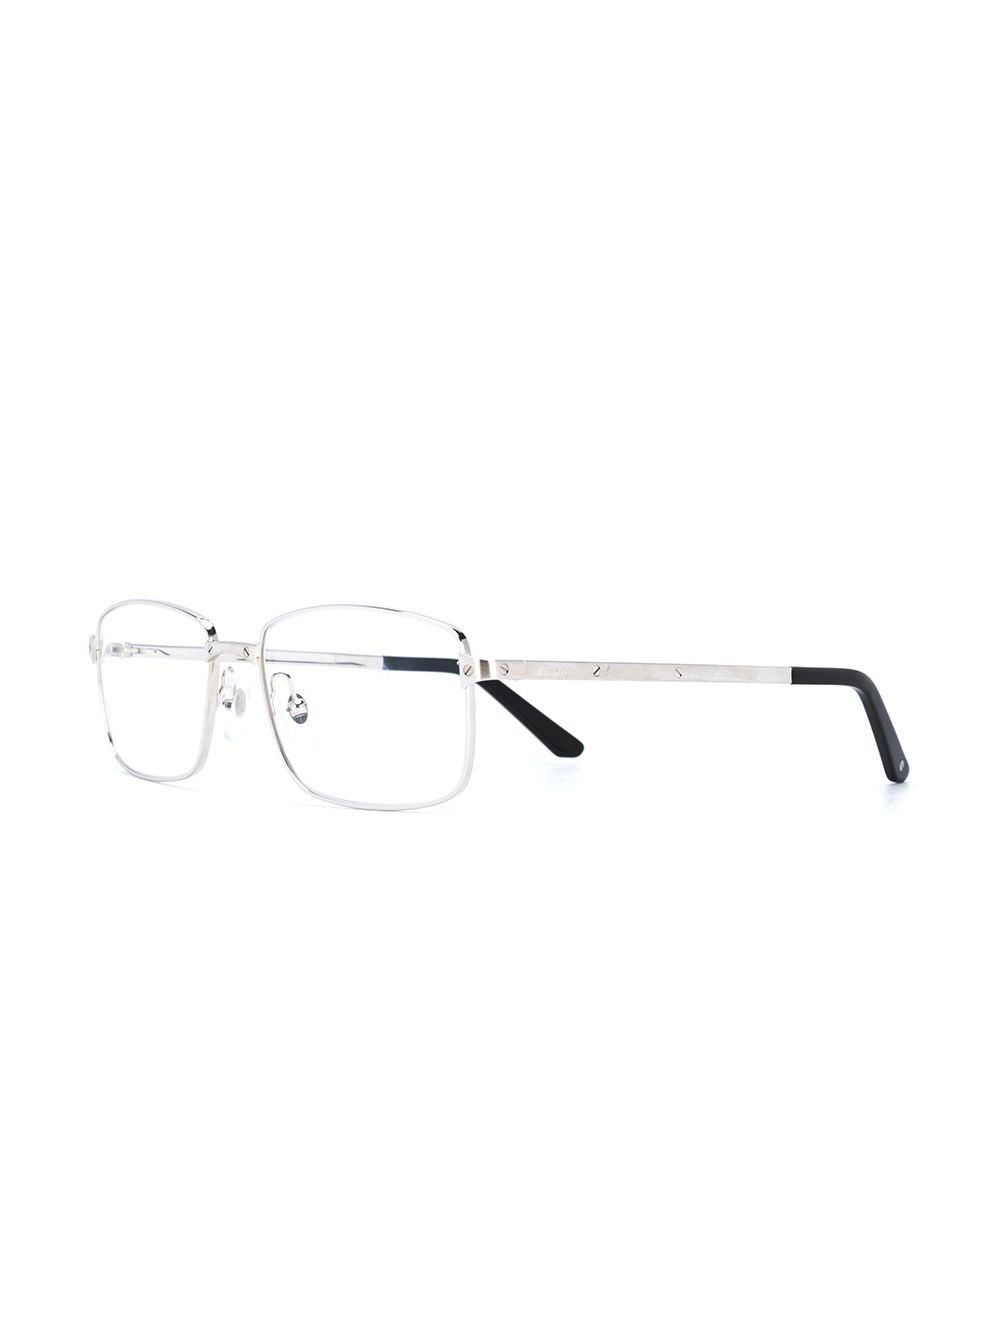 фото Cartier eyewear очки santos в прямоугольной оправе